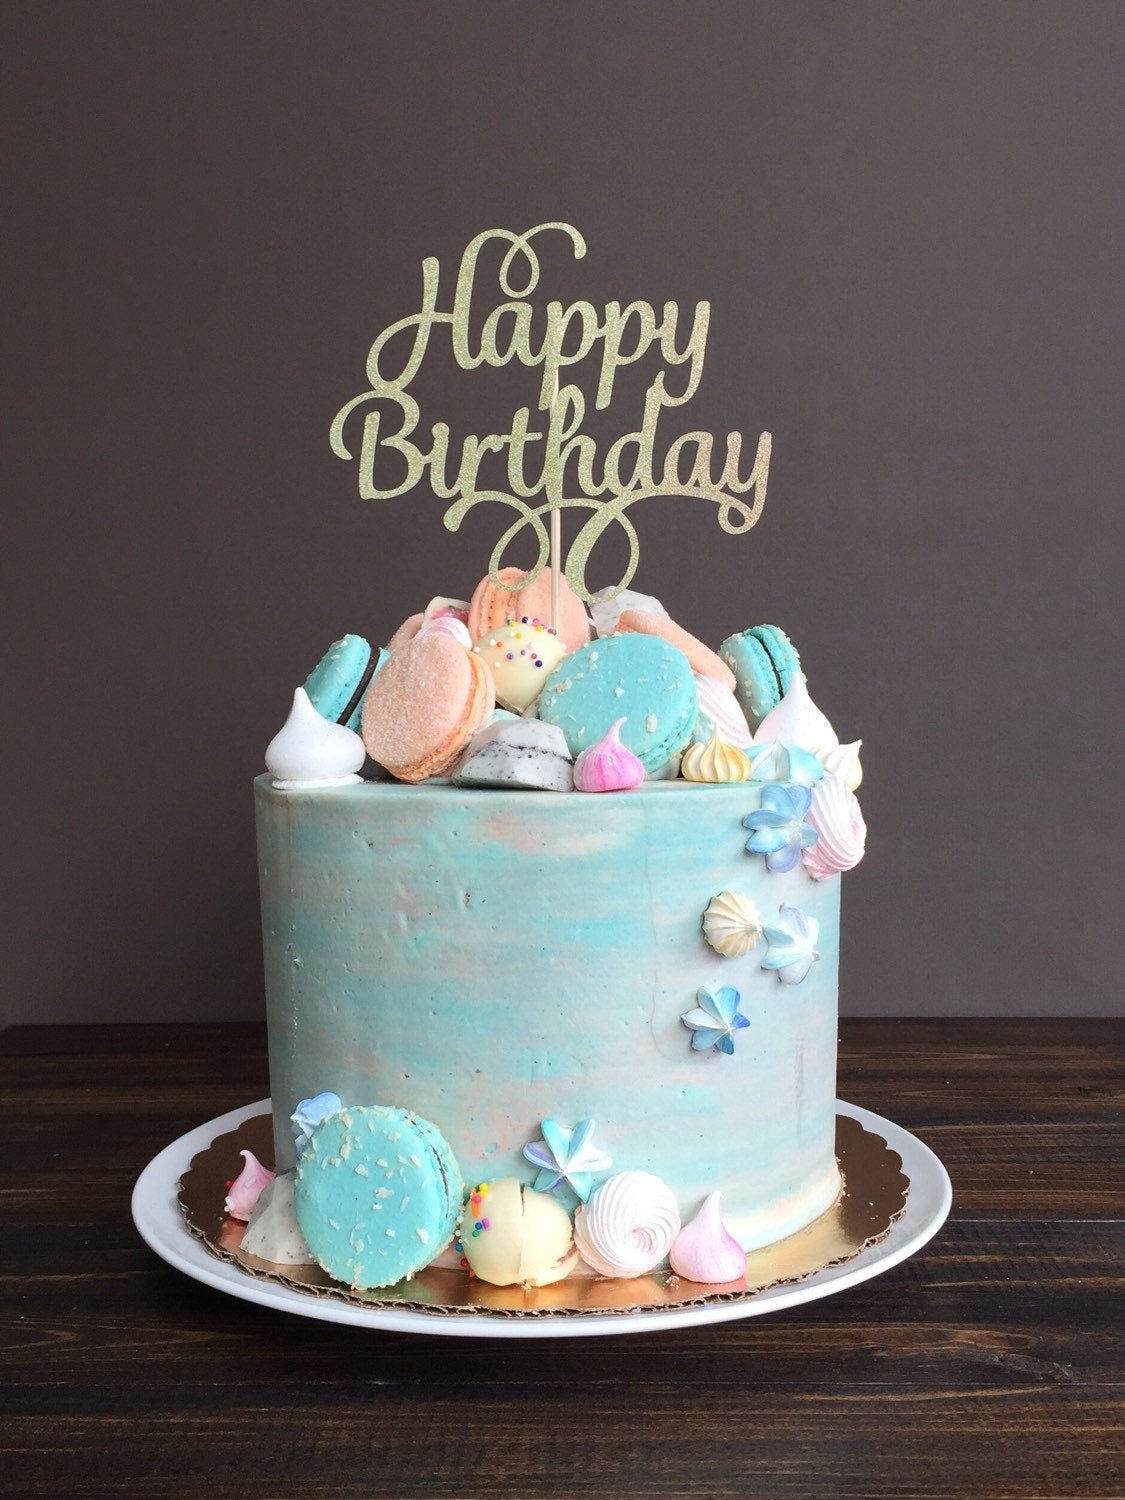 Birthday Cake Topper
 Cake topper Happy Birthday cake topper birthday cake